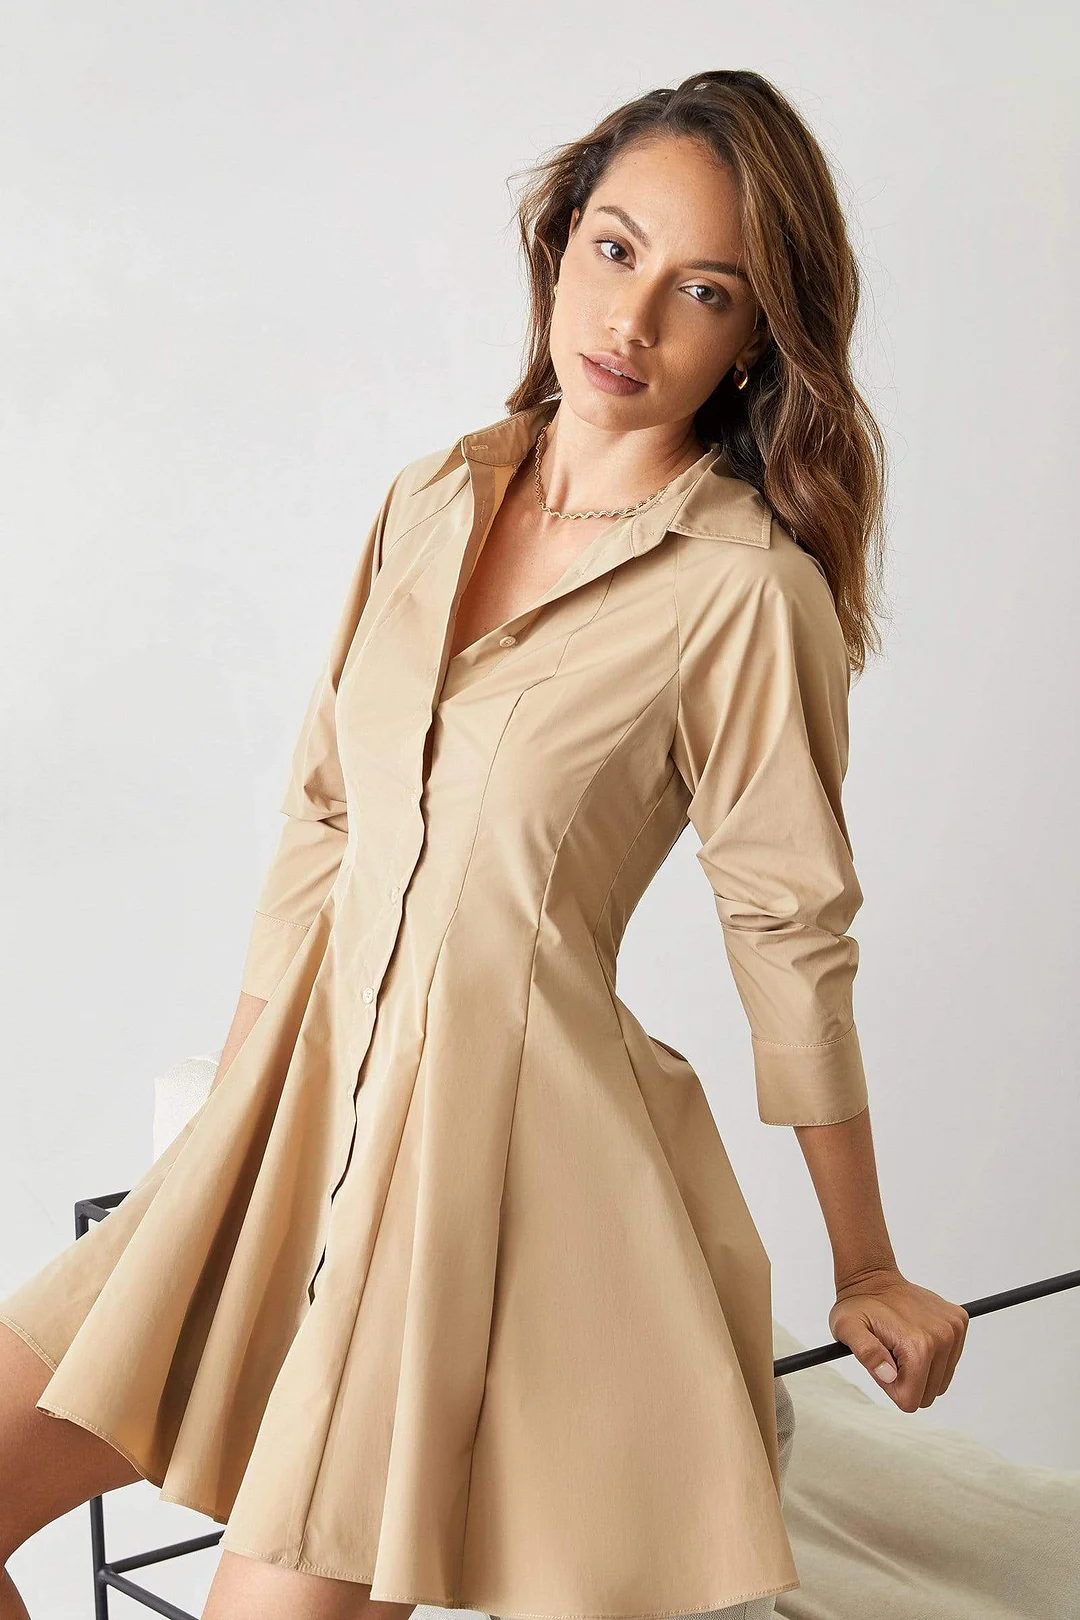 Serena Wheat Button Up Shirt Dress